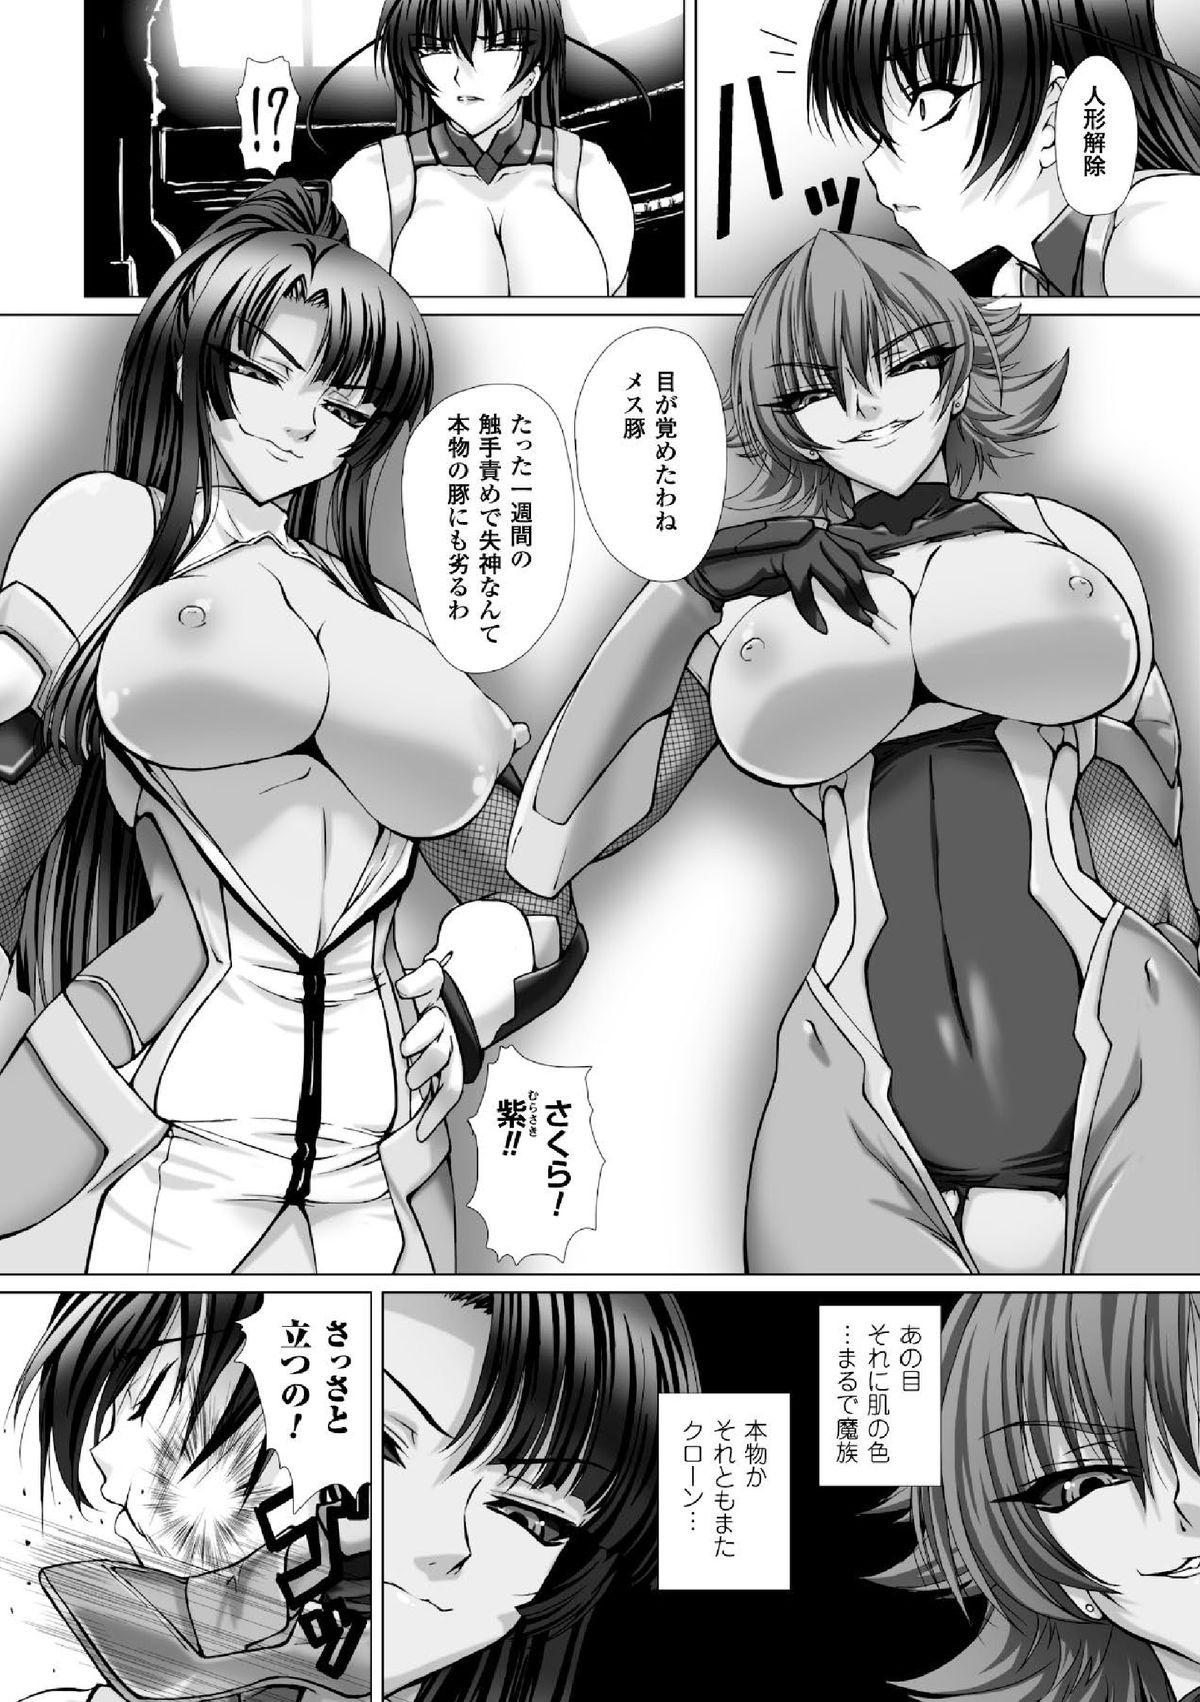 Sologirl Megami Crisis 16 - Taimanin asagi Kangoku senkan Koutetsu no majo annerose Travesti - Page 11